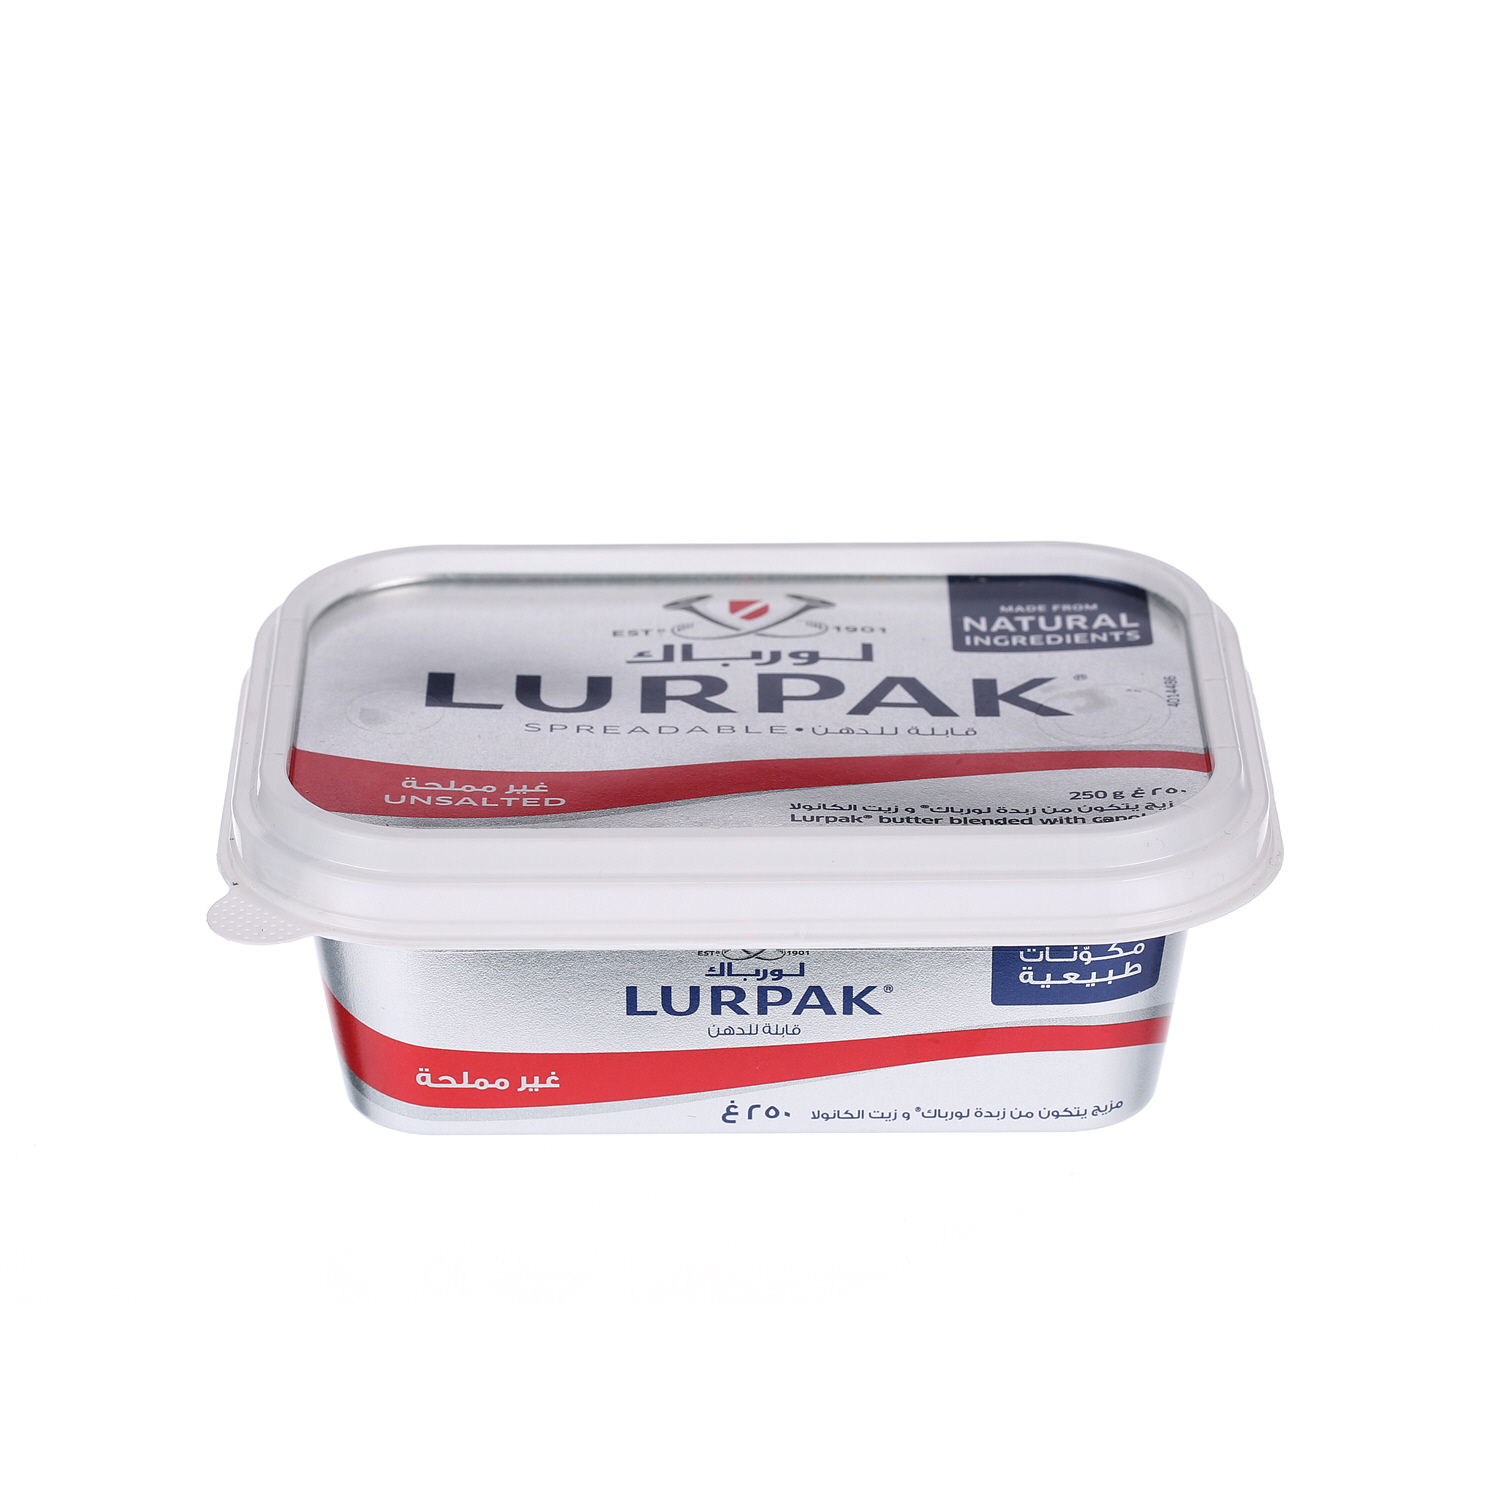 Lurpak Butter Spreadable Unsalted 250 g